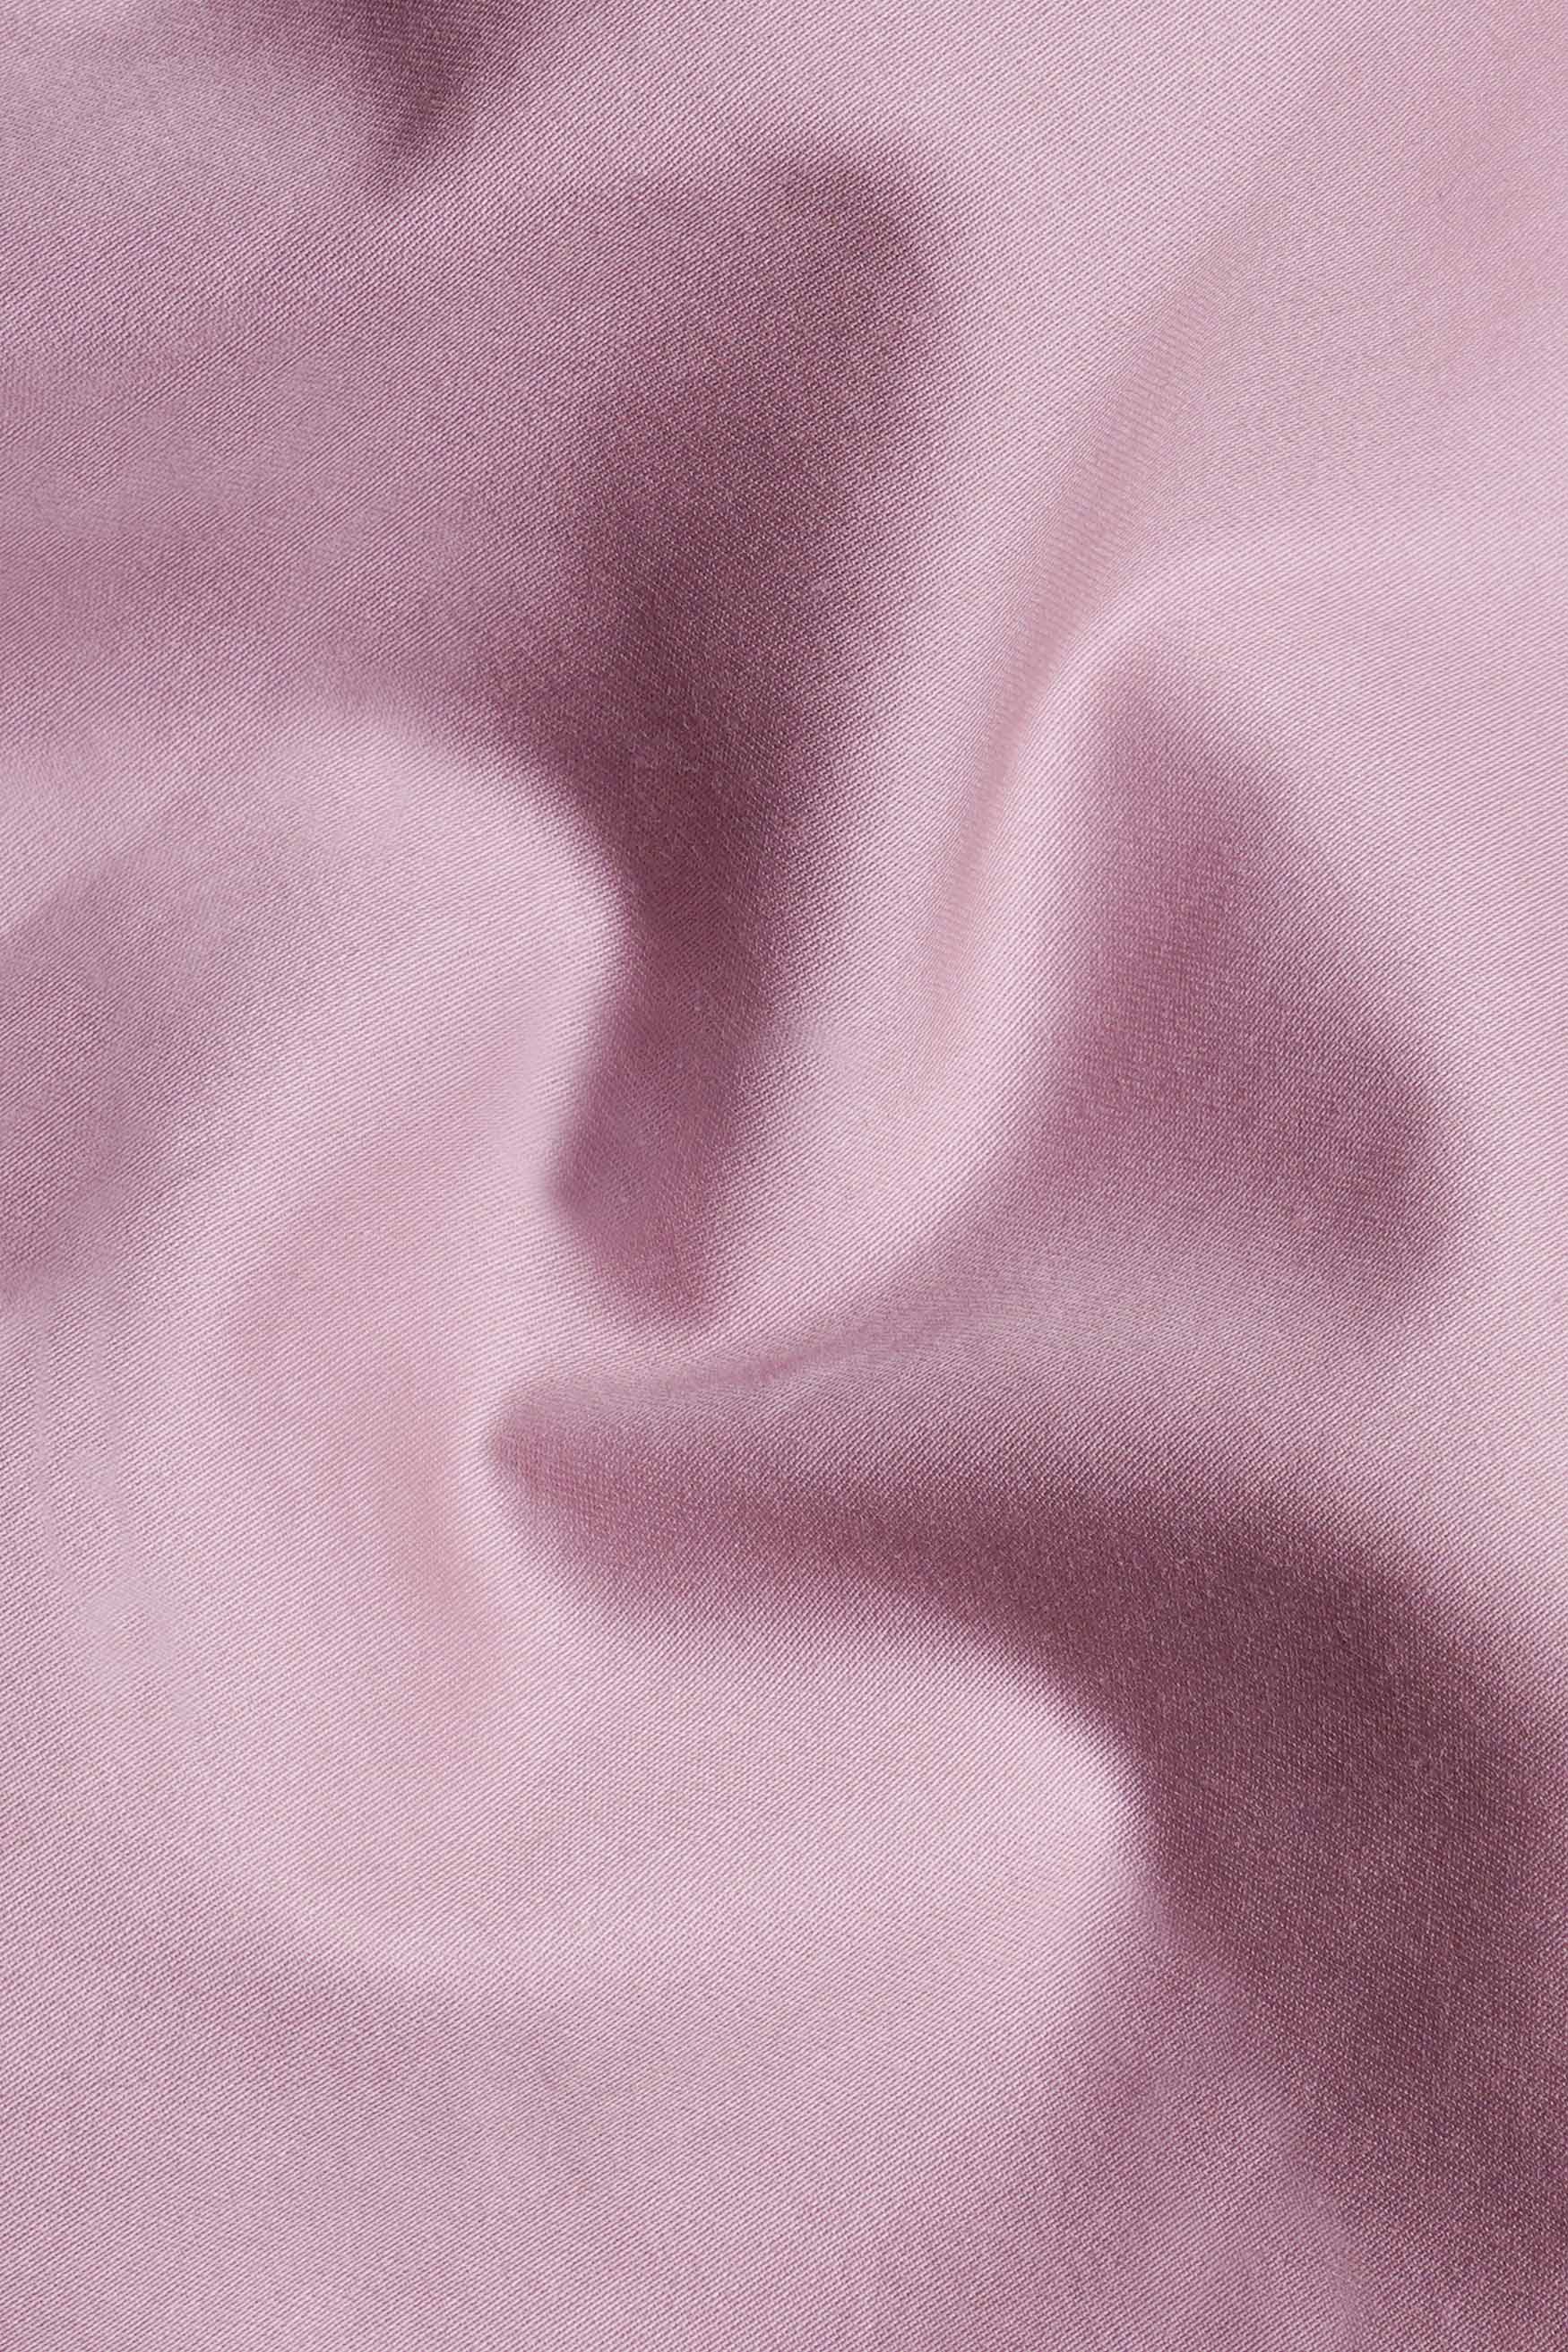 Wisteria Lavender Subtle Sheen Super Soft Premium Cotton Shirt